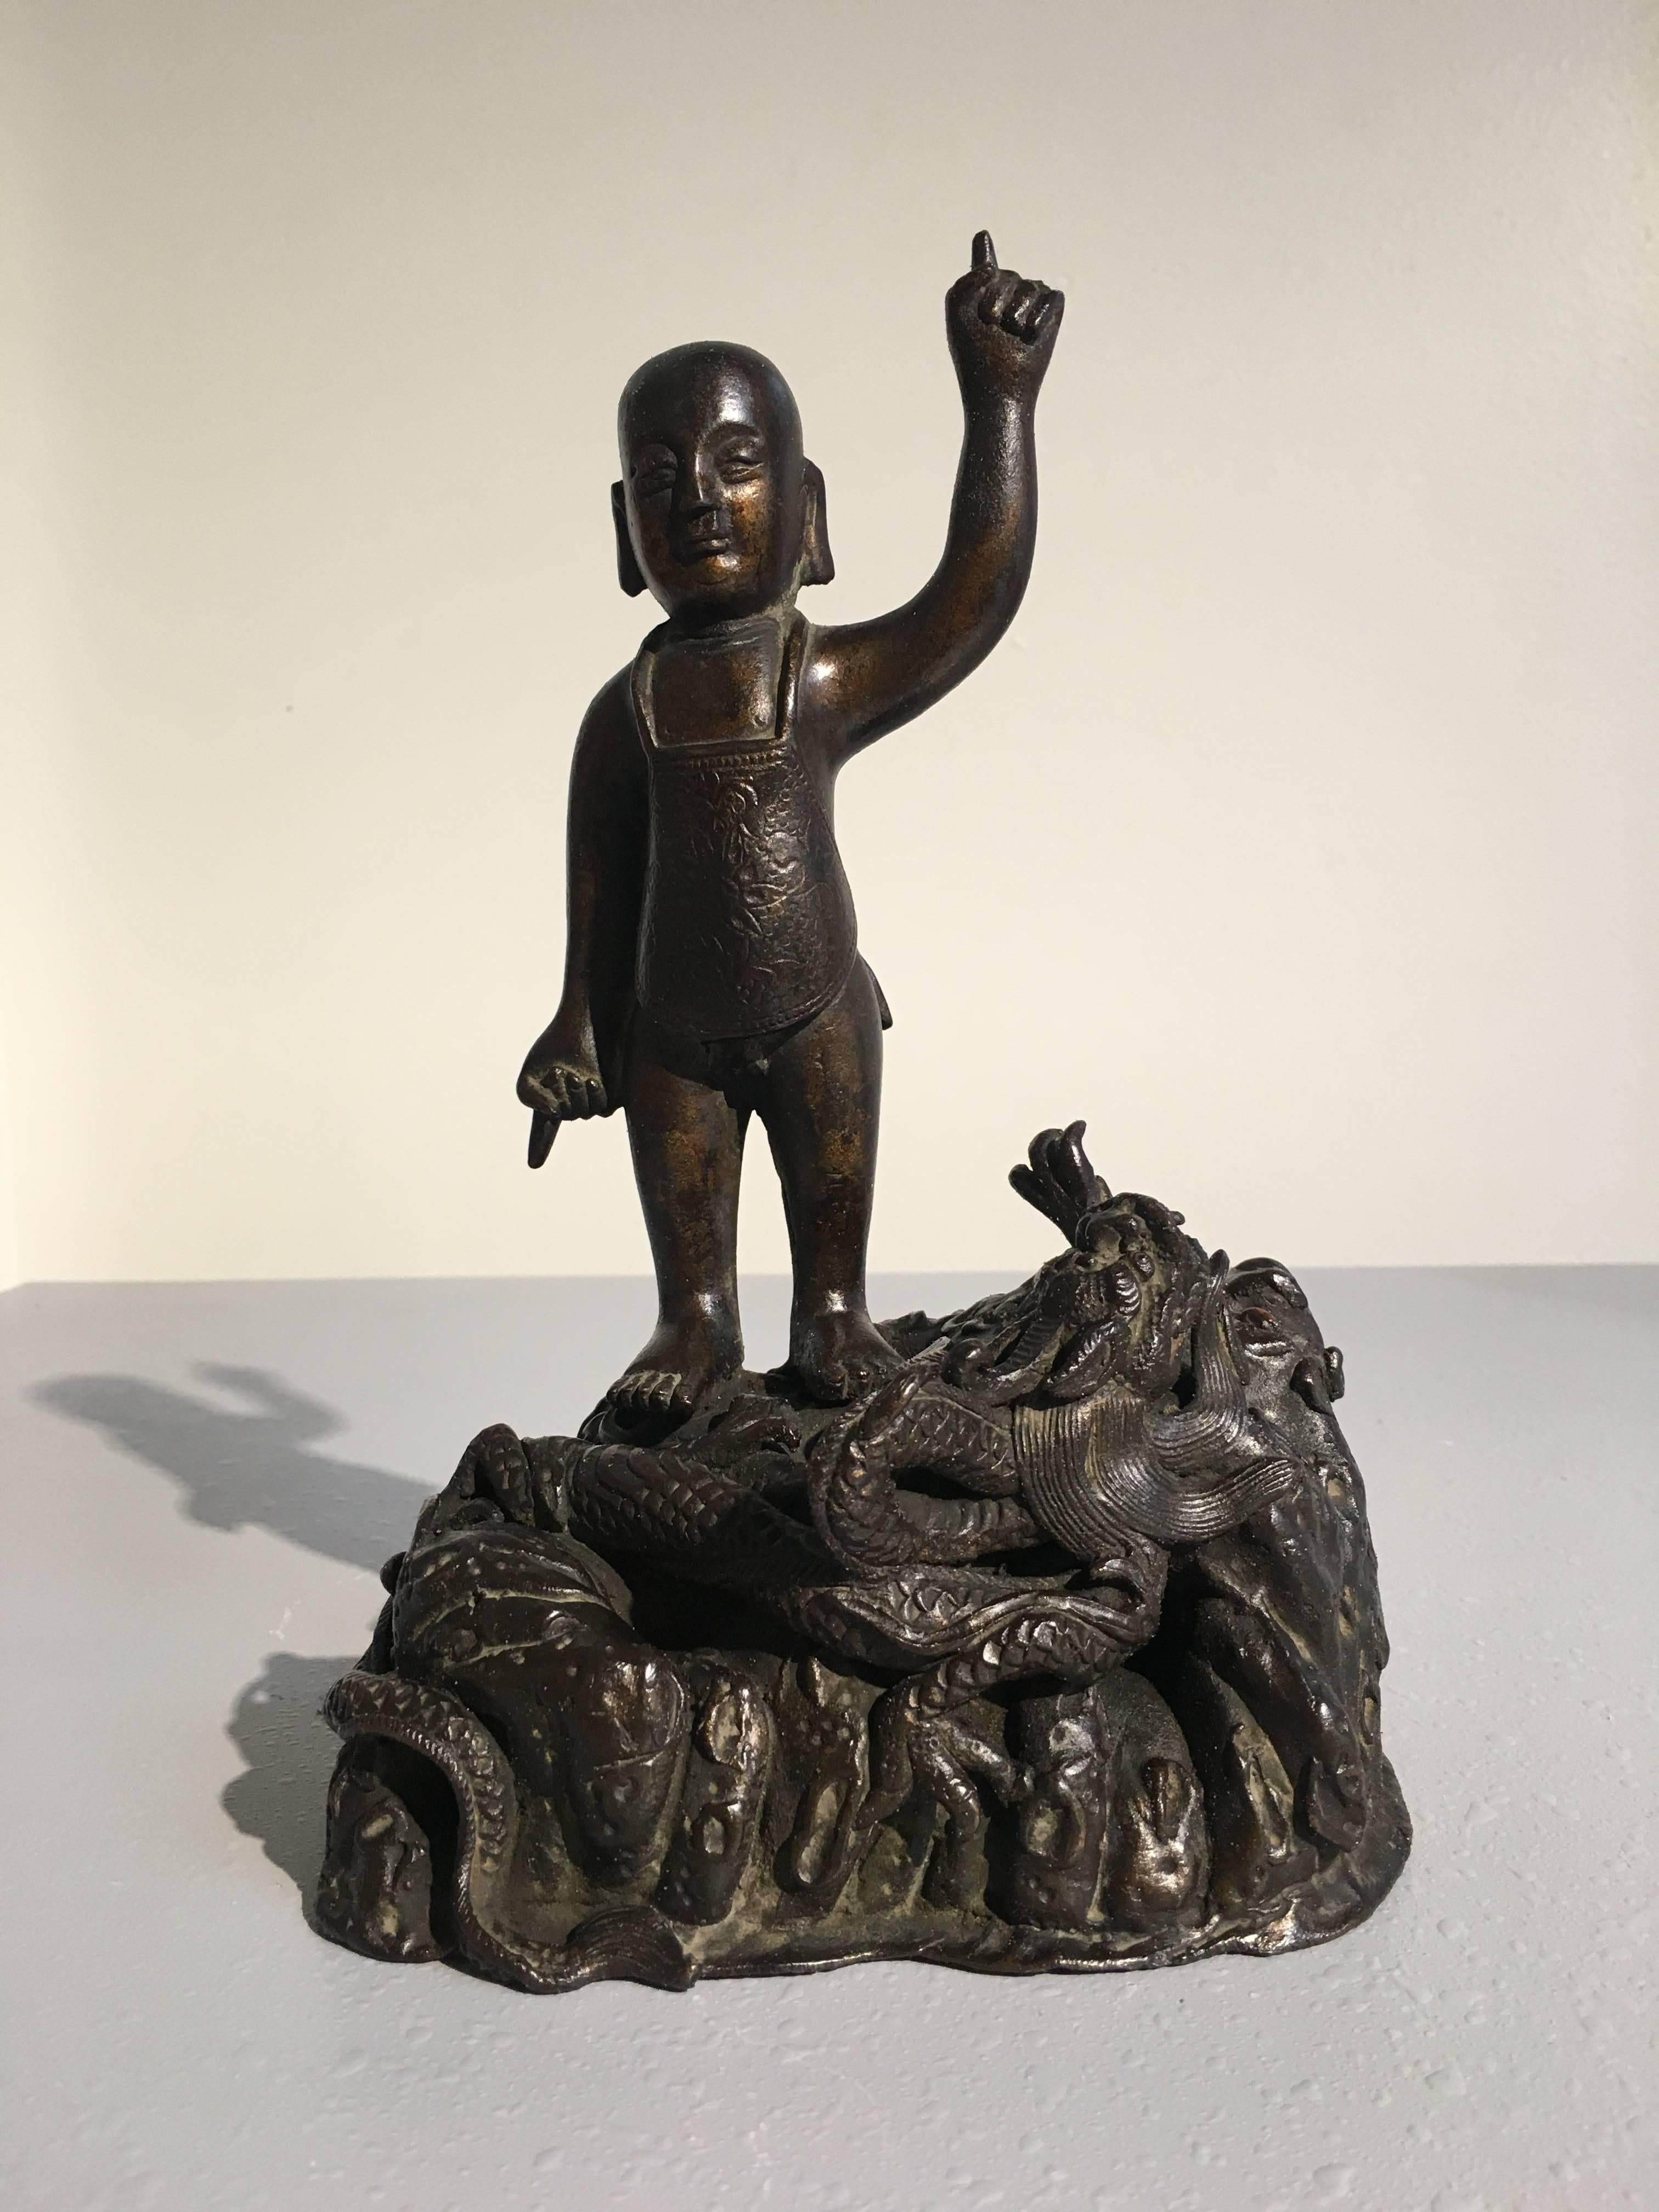 Una rara e insolita figura in bronzo della dinastia Ming cinese raffigurante il Buddha da bambino. Il giovane principe Siddharta, che da grande sarebbe diventato il Buddha, è raffigurato in piedi, con una mano rivolta al cielo e l'altra al suolo. An